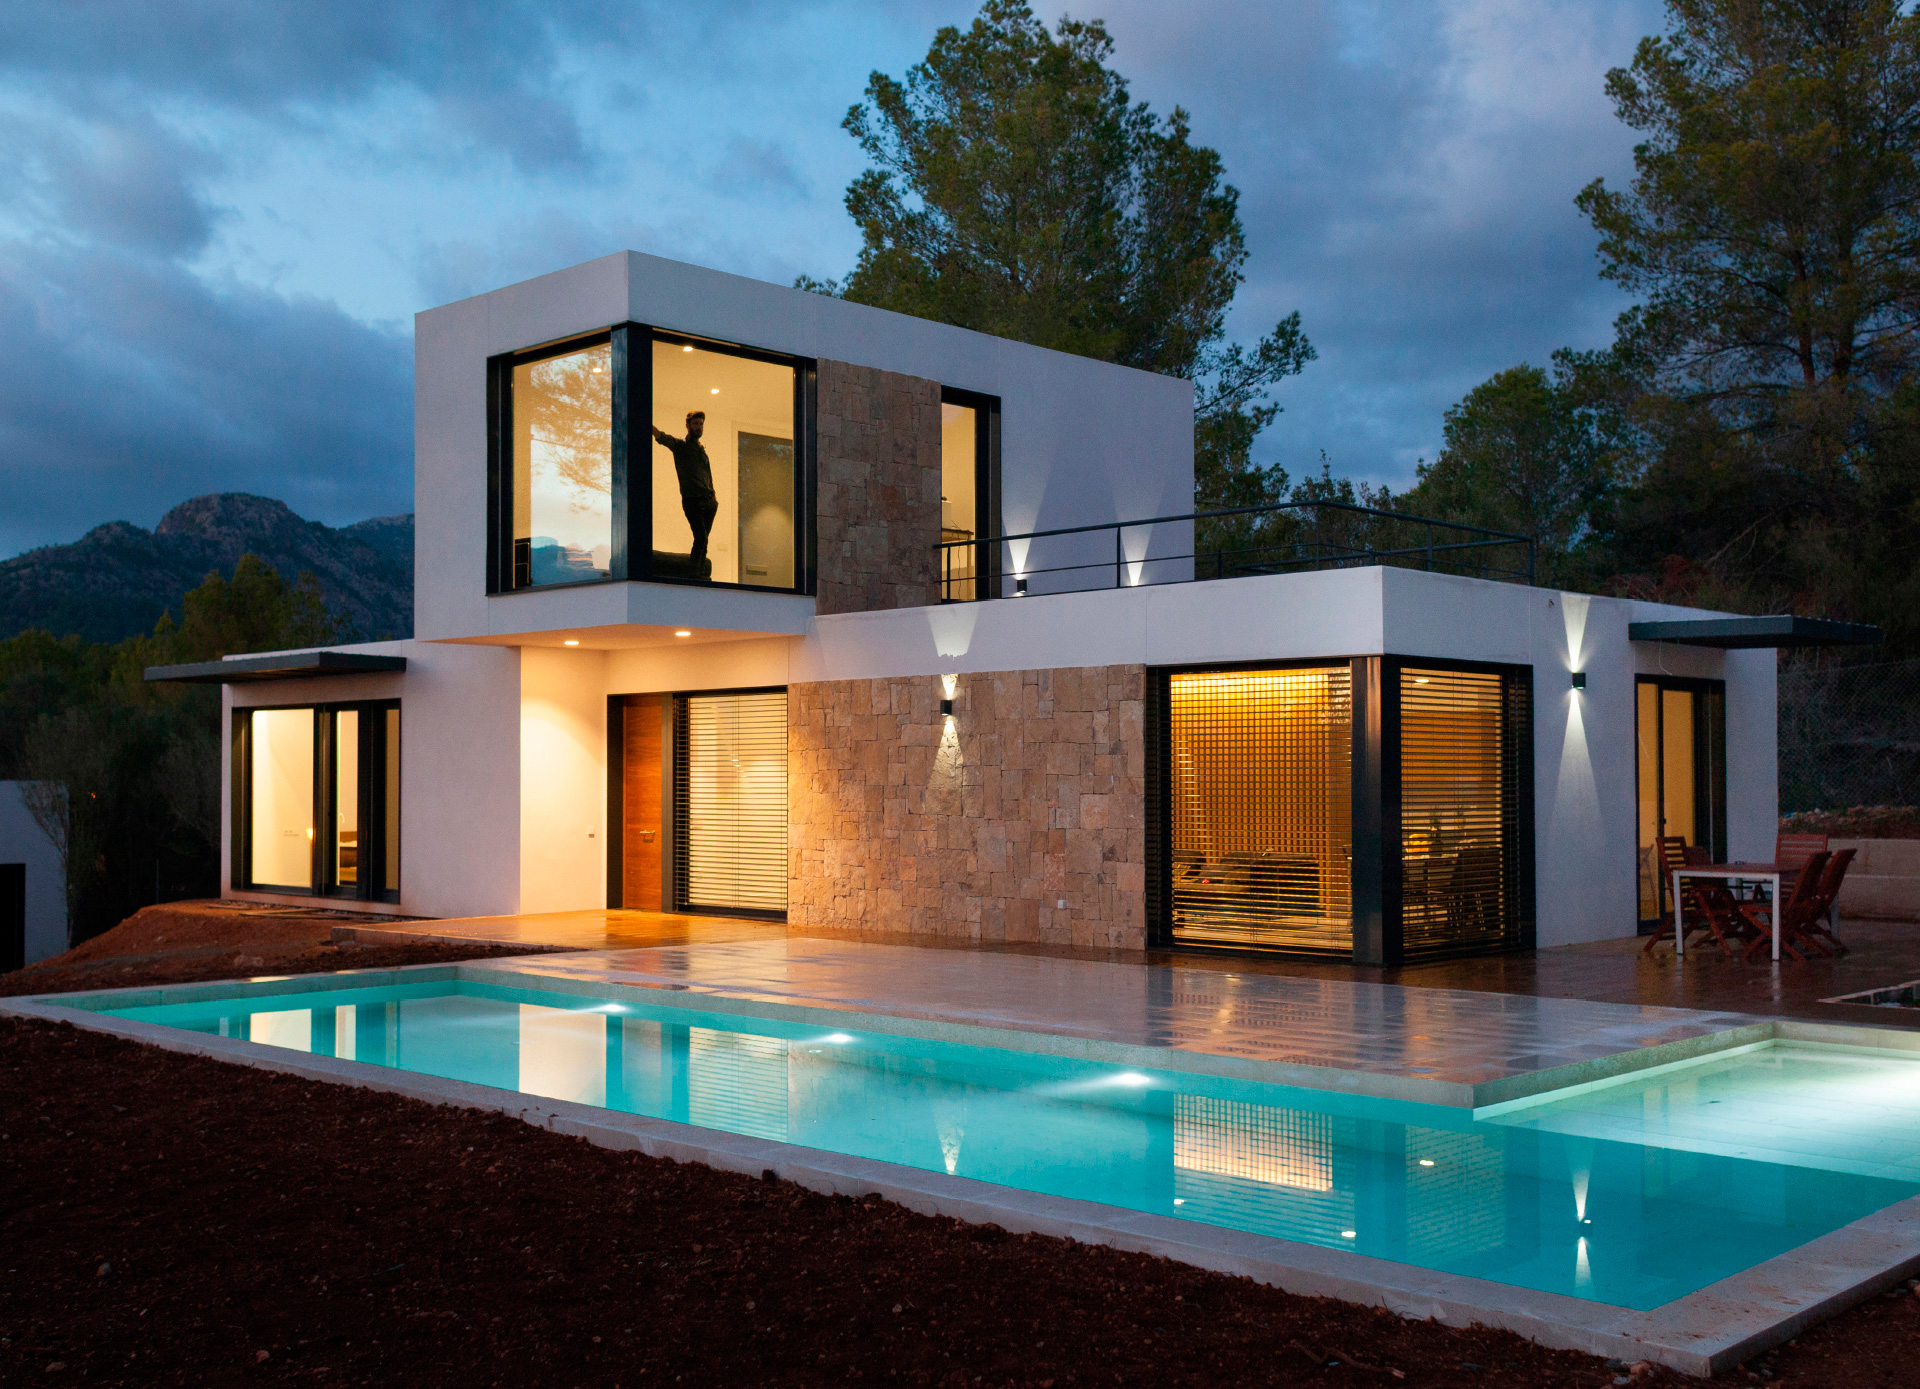 modelo-estepona-personalizada-estilo-mediterraneo-casa-modular-inhaus-en-mallorca